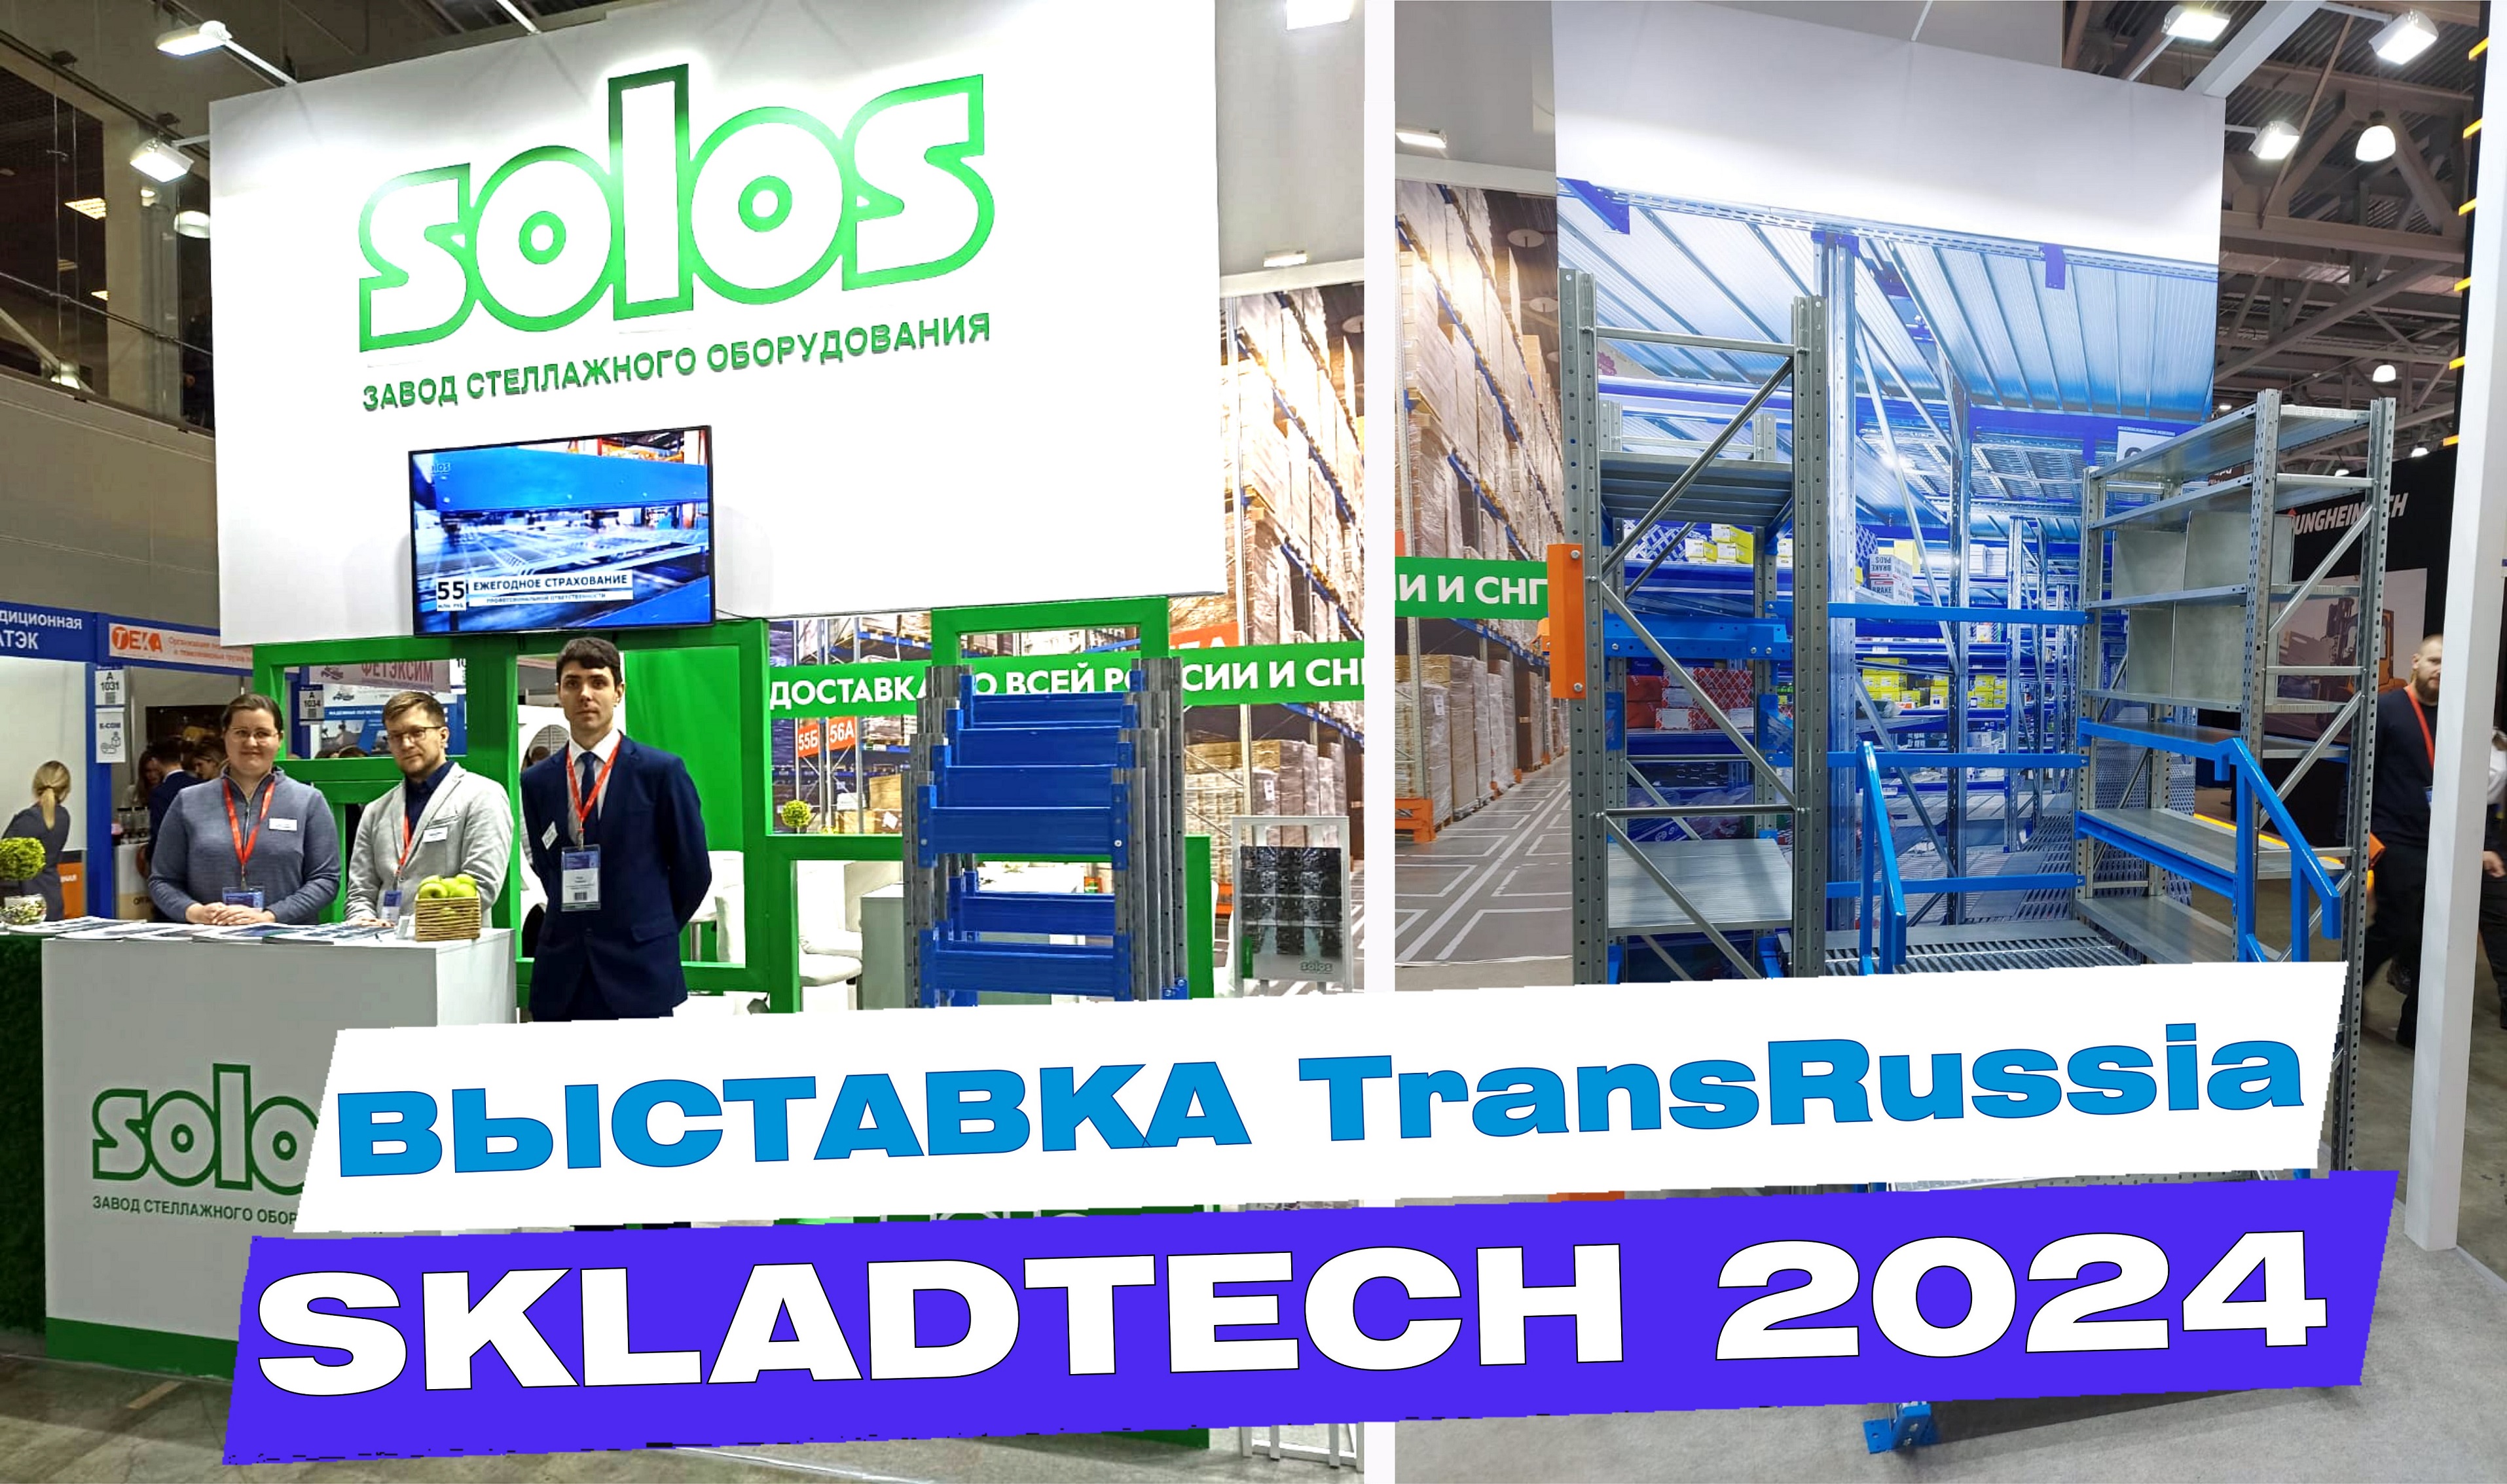 Завод SOLOS на выставке TransRussia_SkladTech 2024